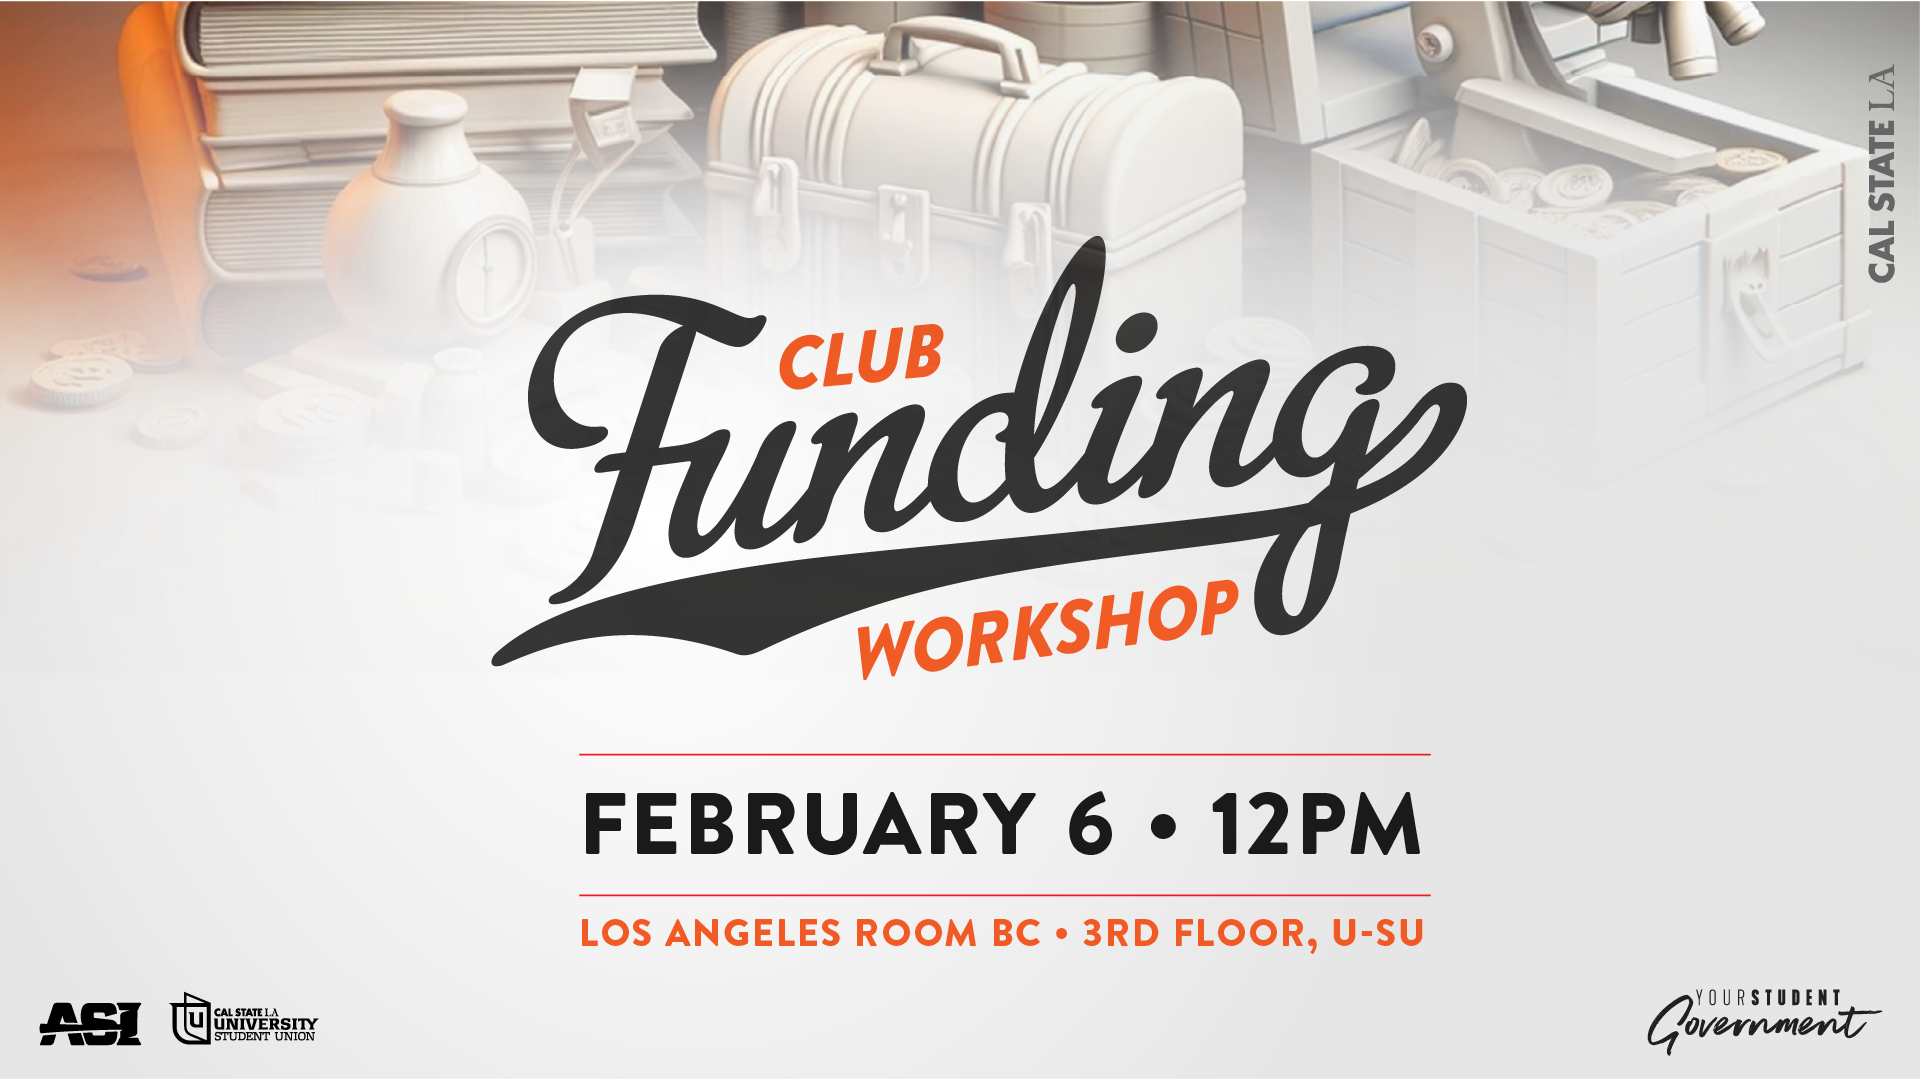 Club Funding Workshop